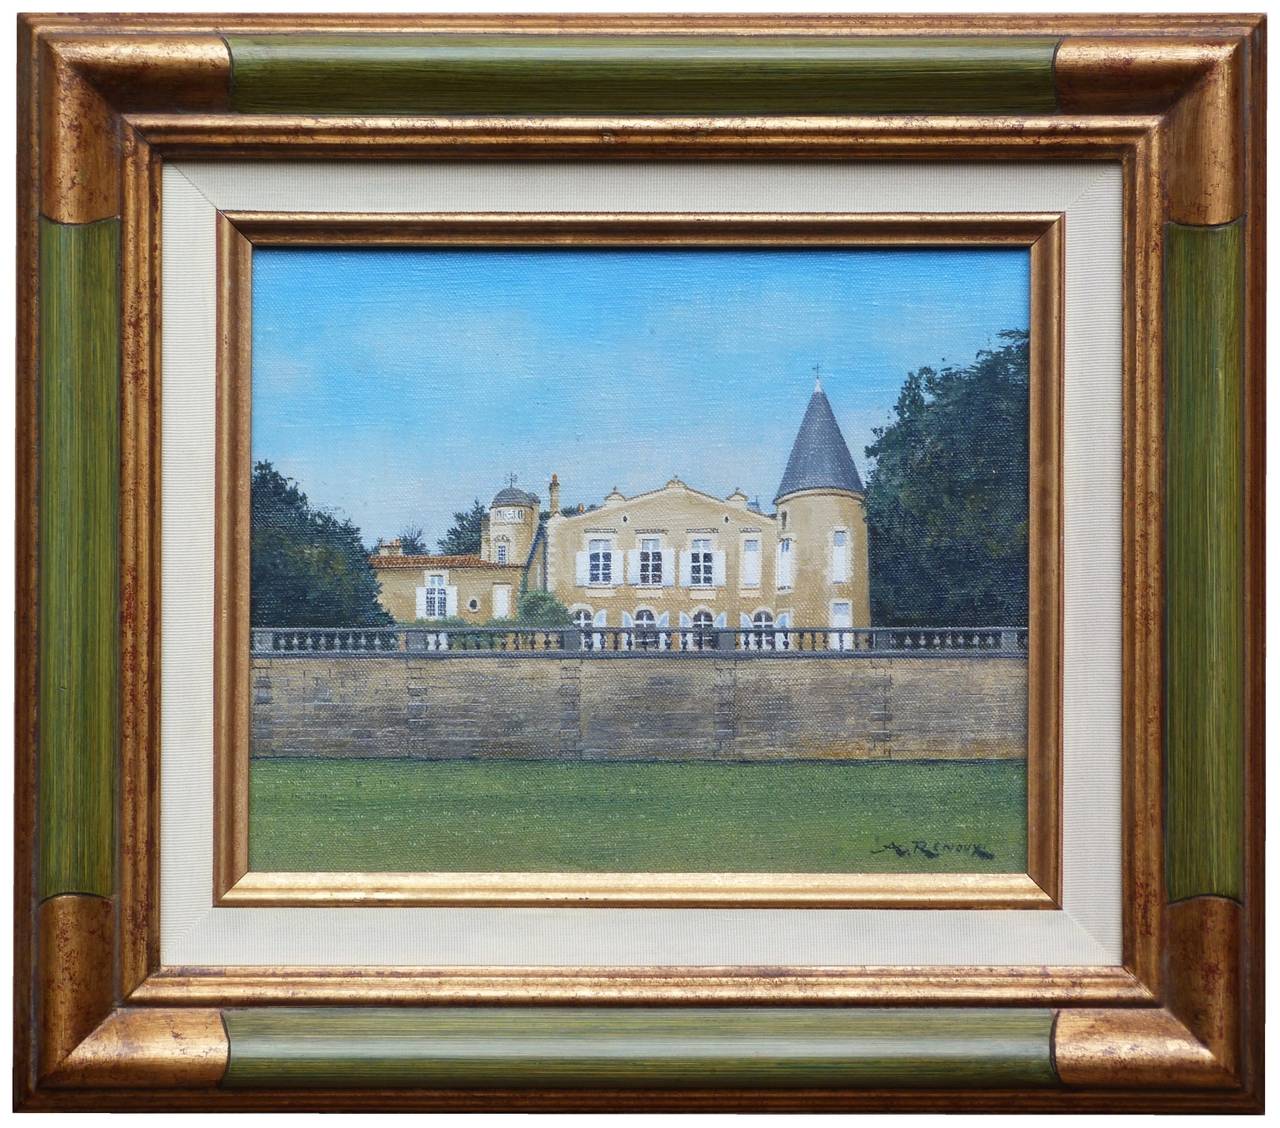 André RENOUX Landscape Painting - Château Lafite-Rothschild in Bordeaux France